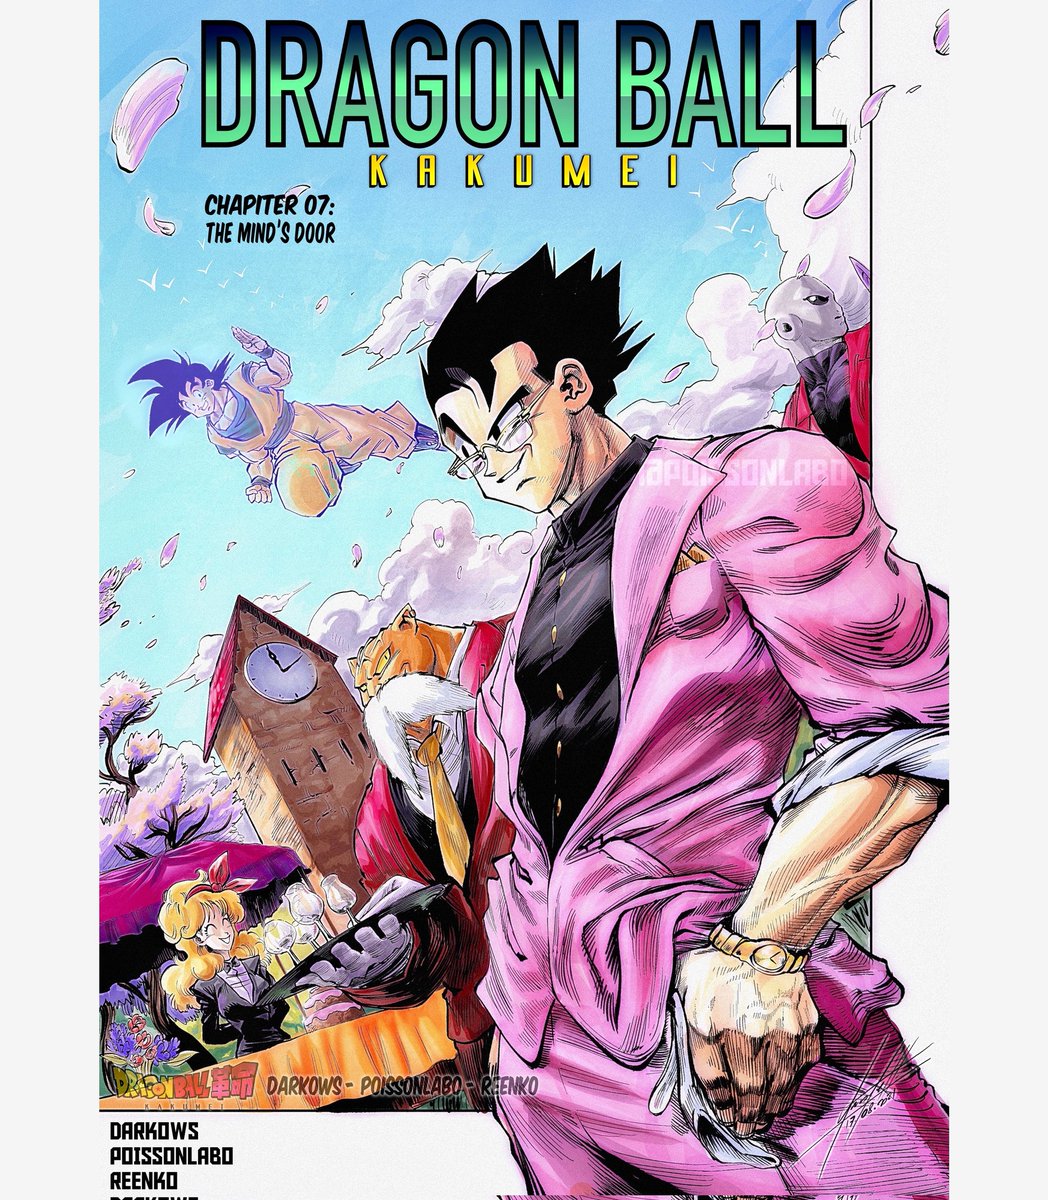 Dragon Ball Kakumei  Dragon ball wallpapers, Anime dragon ball